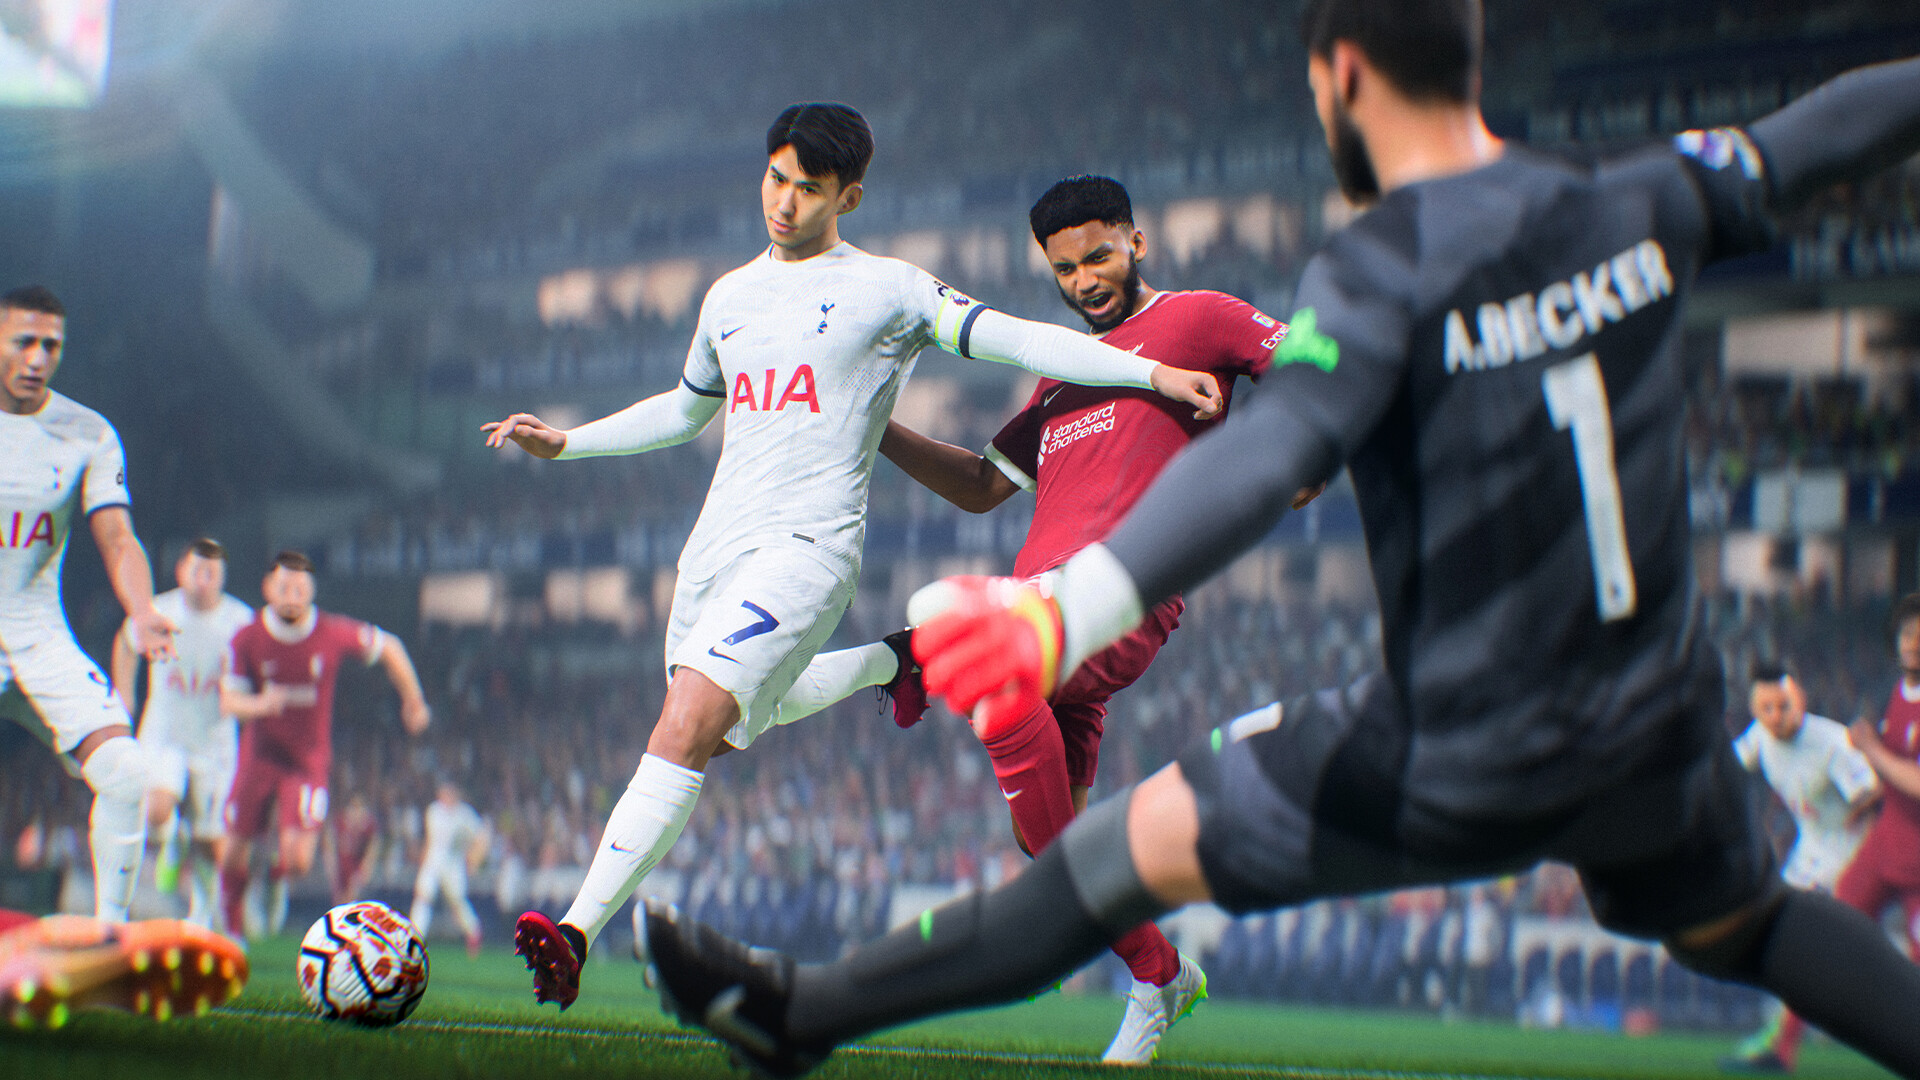 GAME celebra el lanzamiento de EA Sports FC 24 con DLC de regalo, packs,  descuentos y más - Vandal